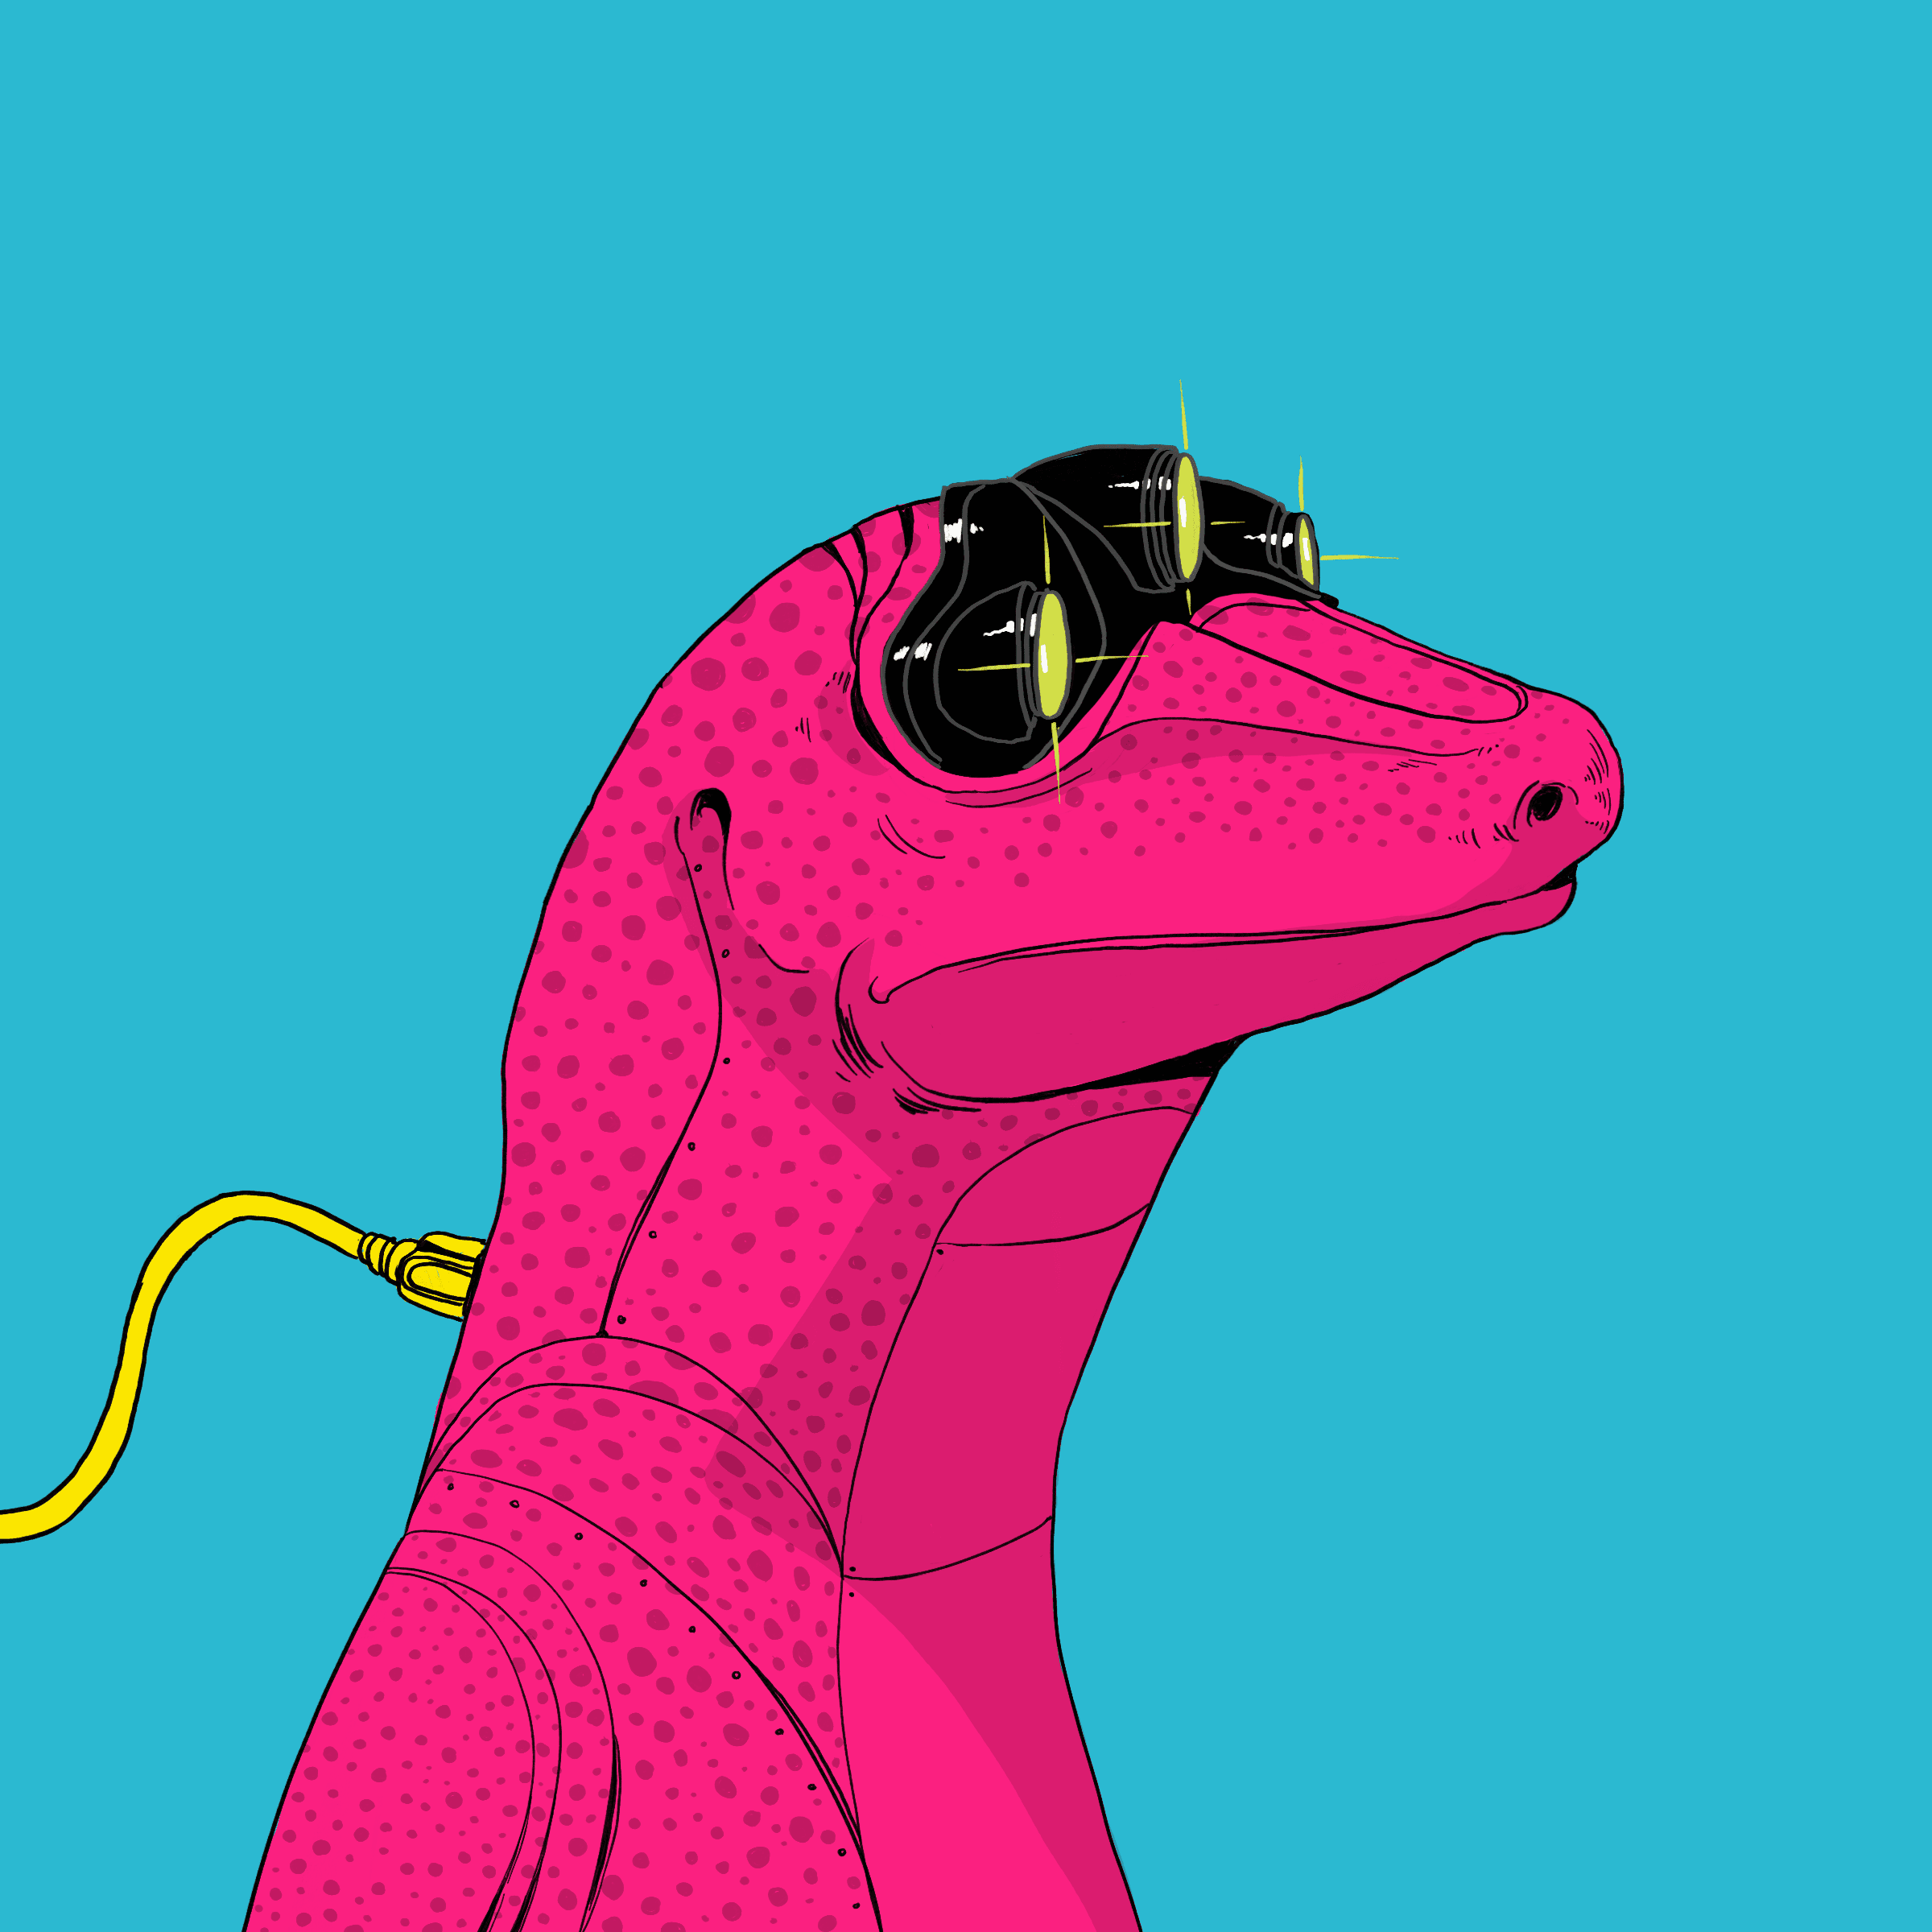 Lizard #3967